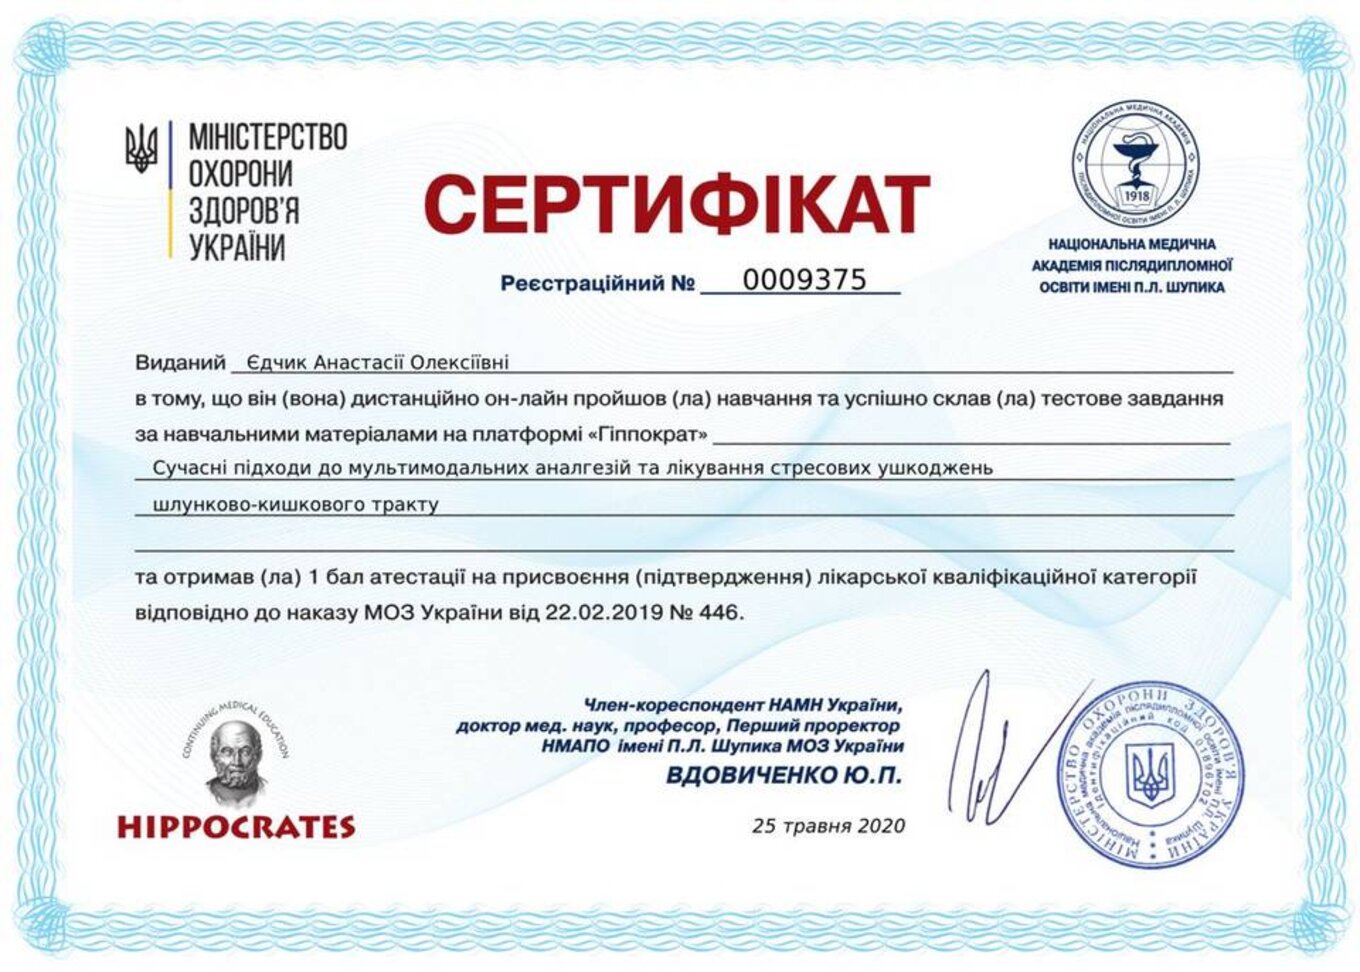 certificates/yedchik-anastasiya-oleksiyivna/erc-edchik-cert-20.jpg